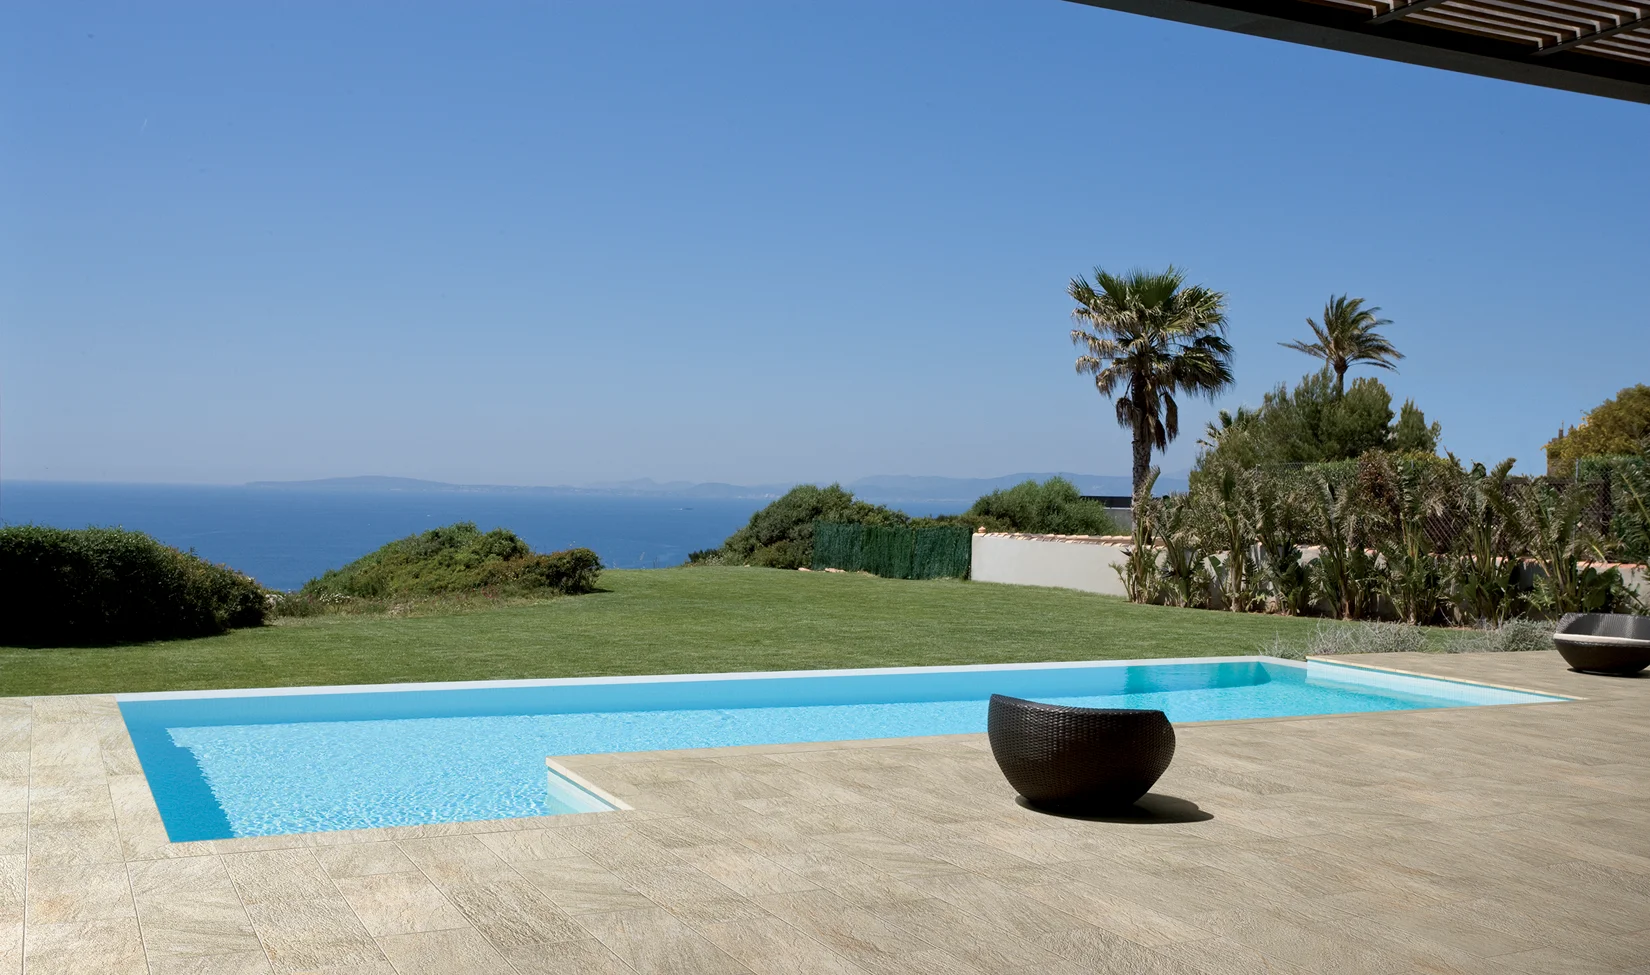 Piscina esterna con bordo in piastrelle effetto pietra, circondata da un giardino lussureggiante con palme e vista panoramica sul mare.